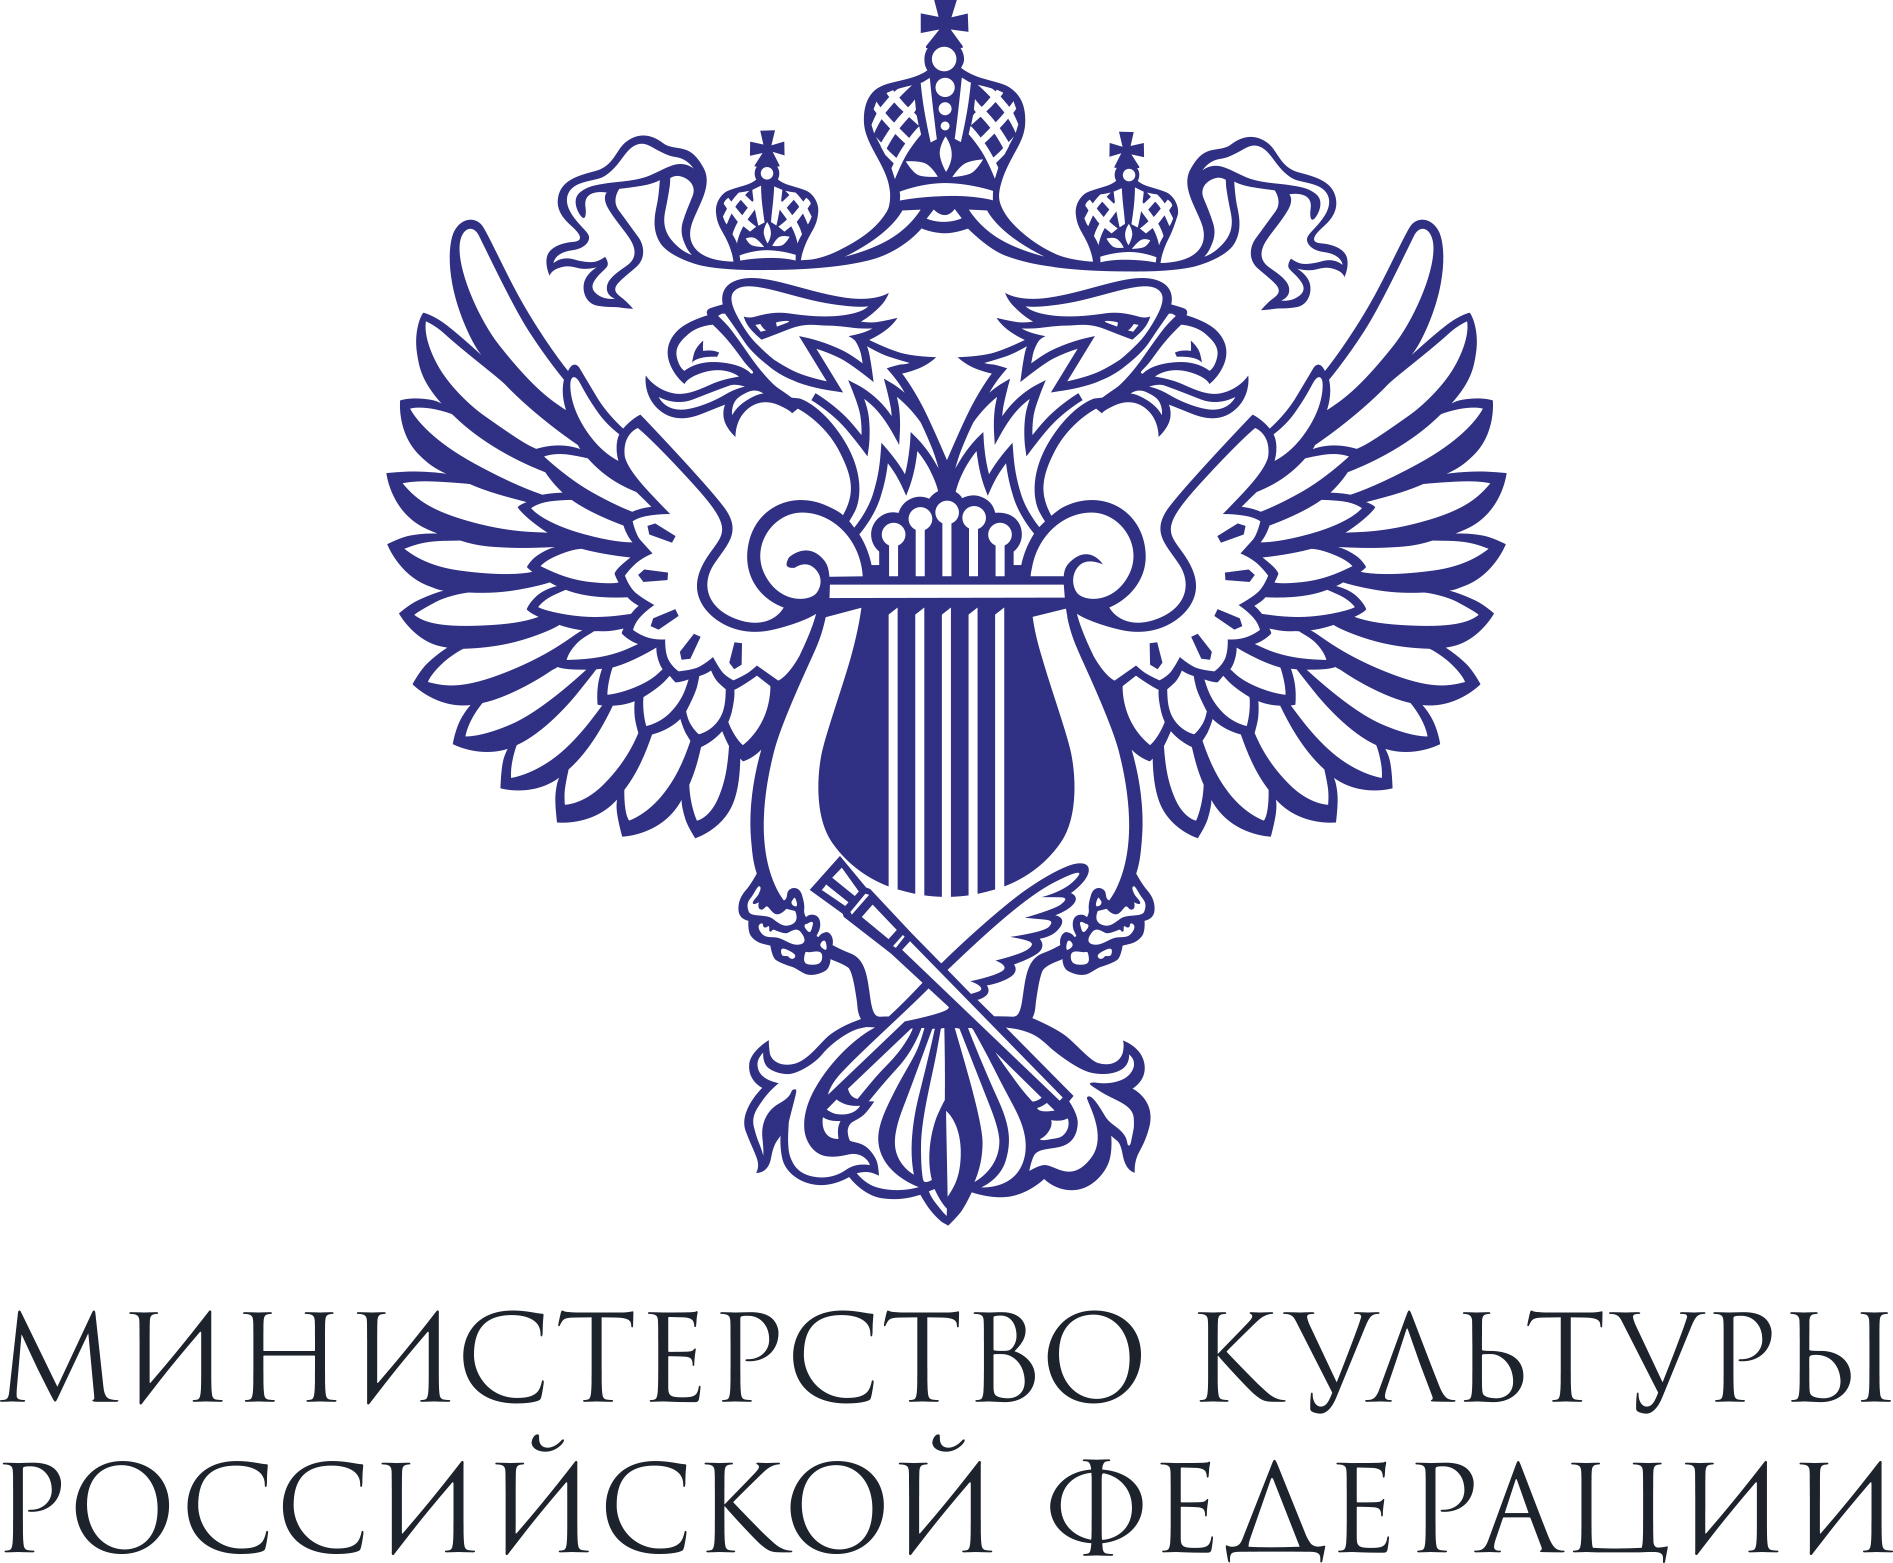 II Всероссийский конкурс региональных методических служб